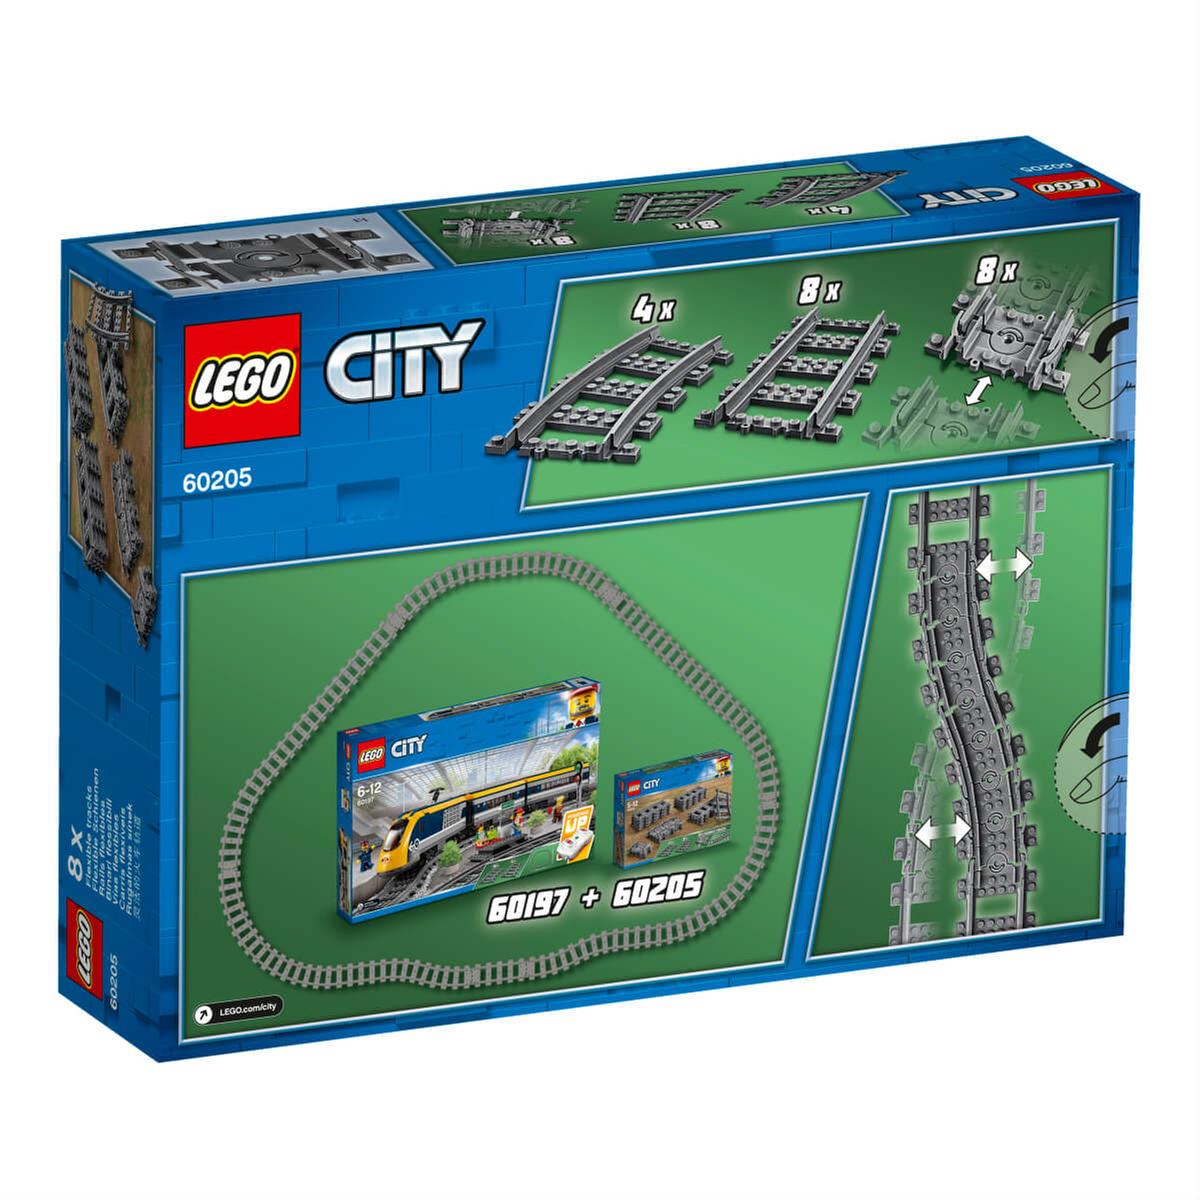 LEGO City - Vías - 60205 | Lego City Trains | Toys"R"Us España